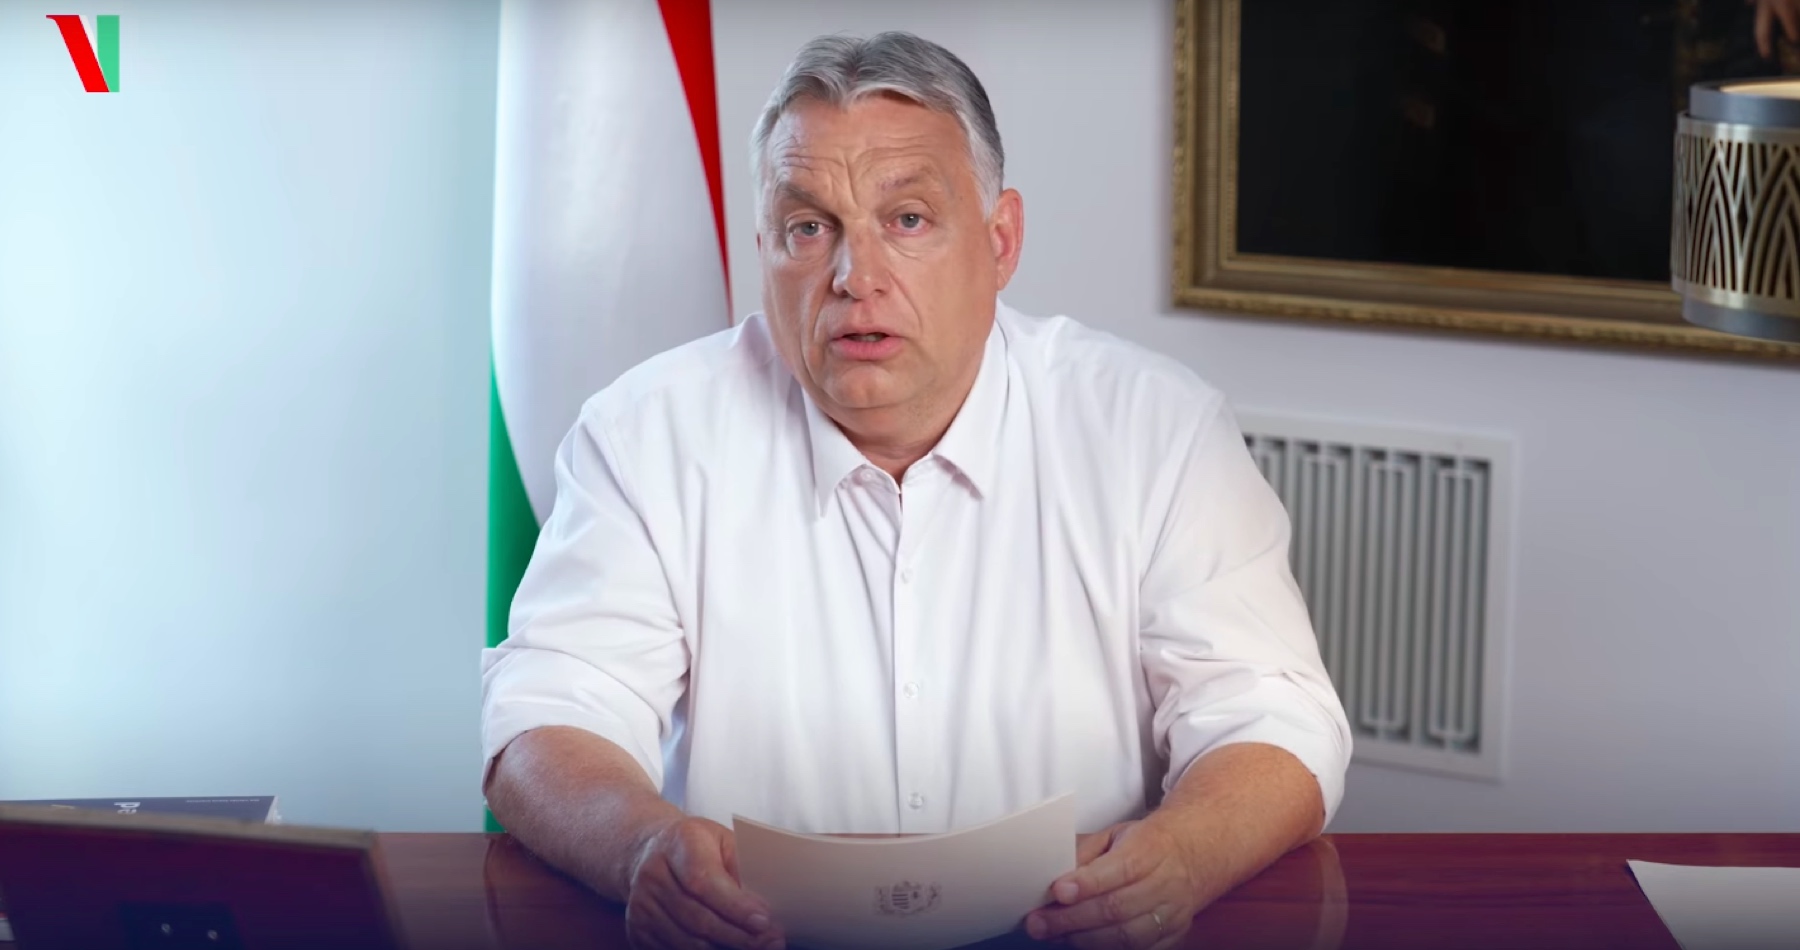 VIDEO: Orbán oznámil, že jeho vláda kvôli pomoci rodinám a maďarskej ekonomike zdaní extra zisk bánk a nadnárodných korporácií